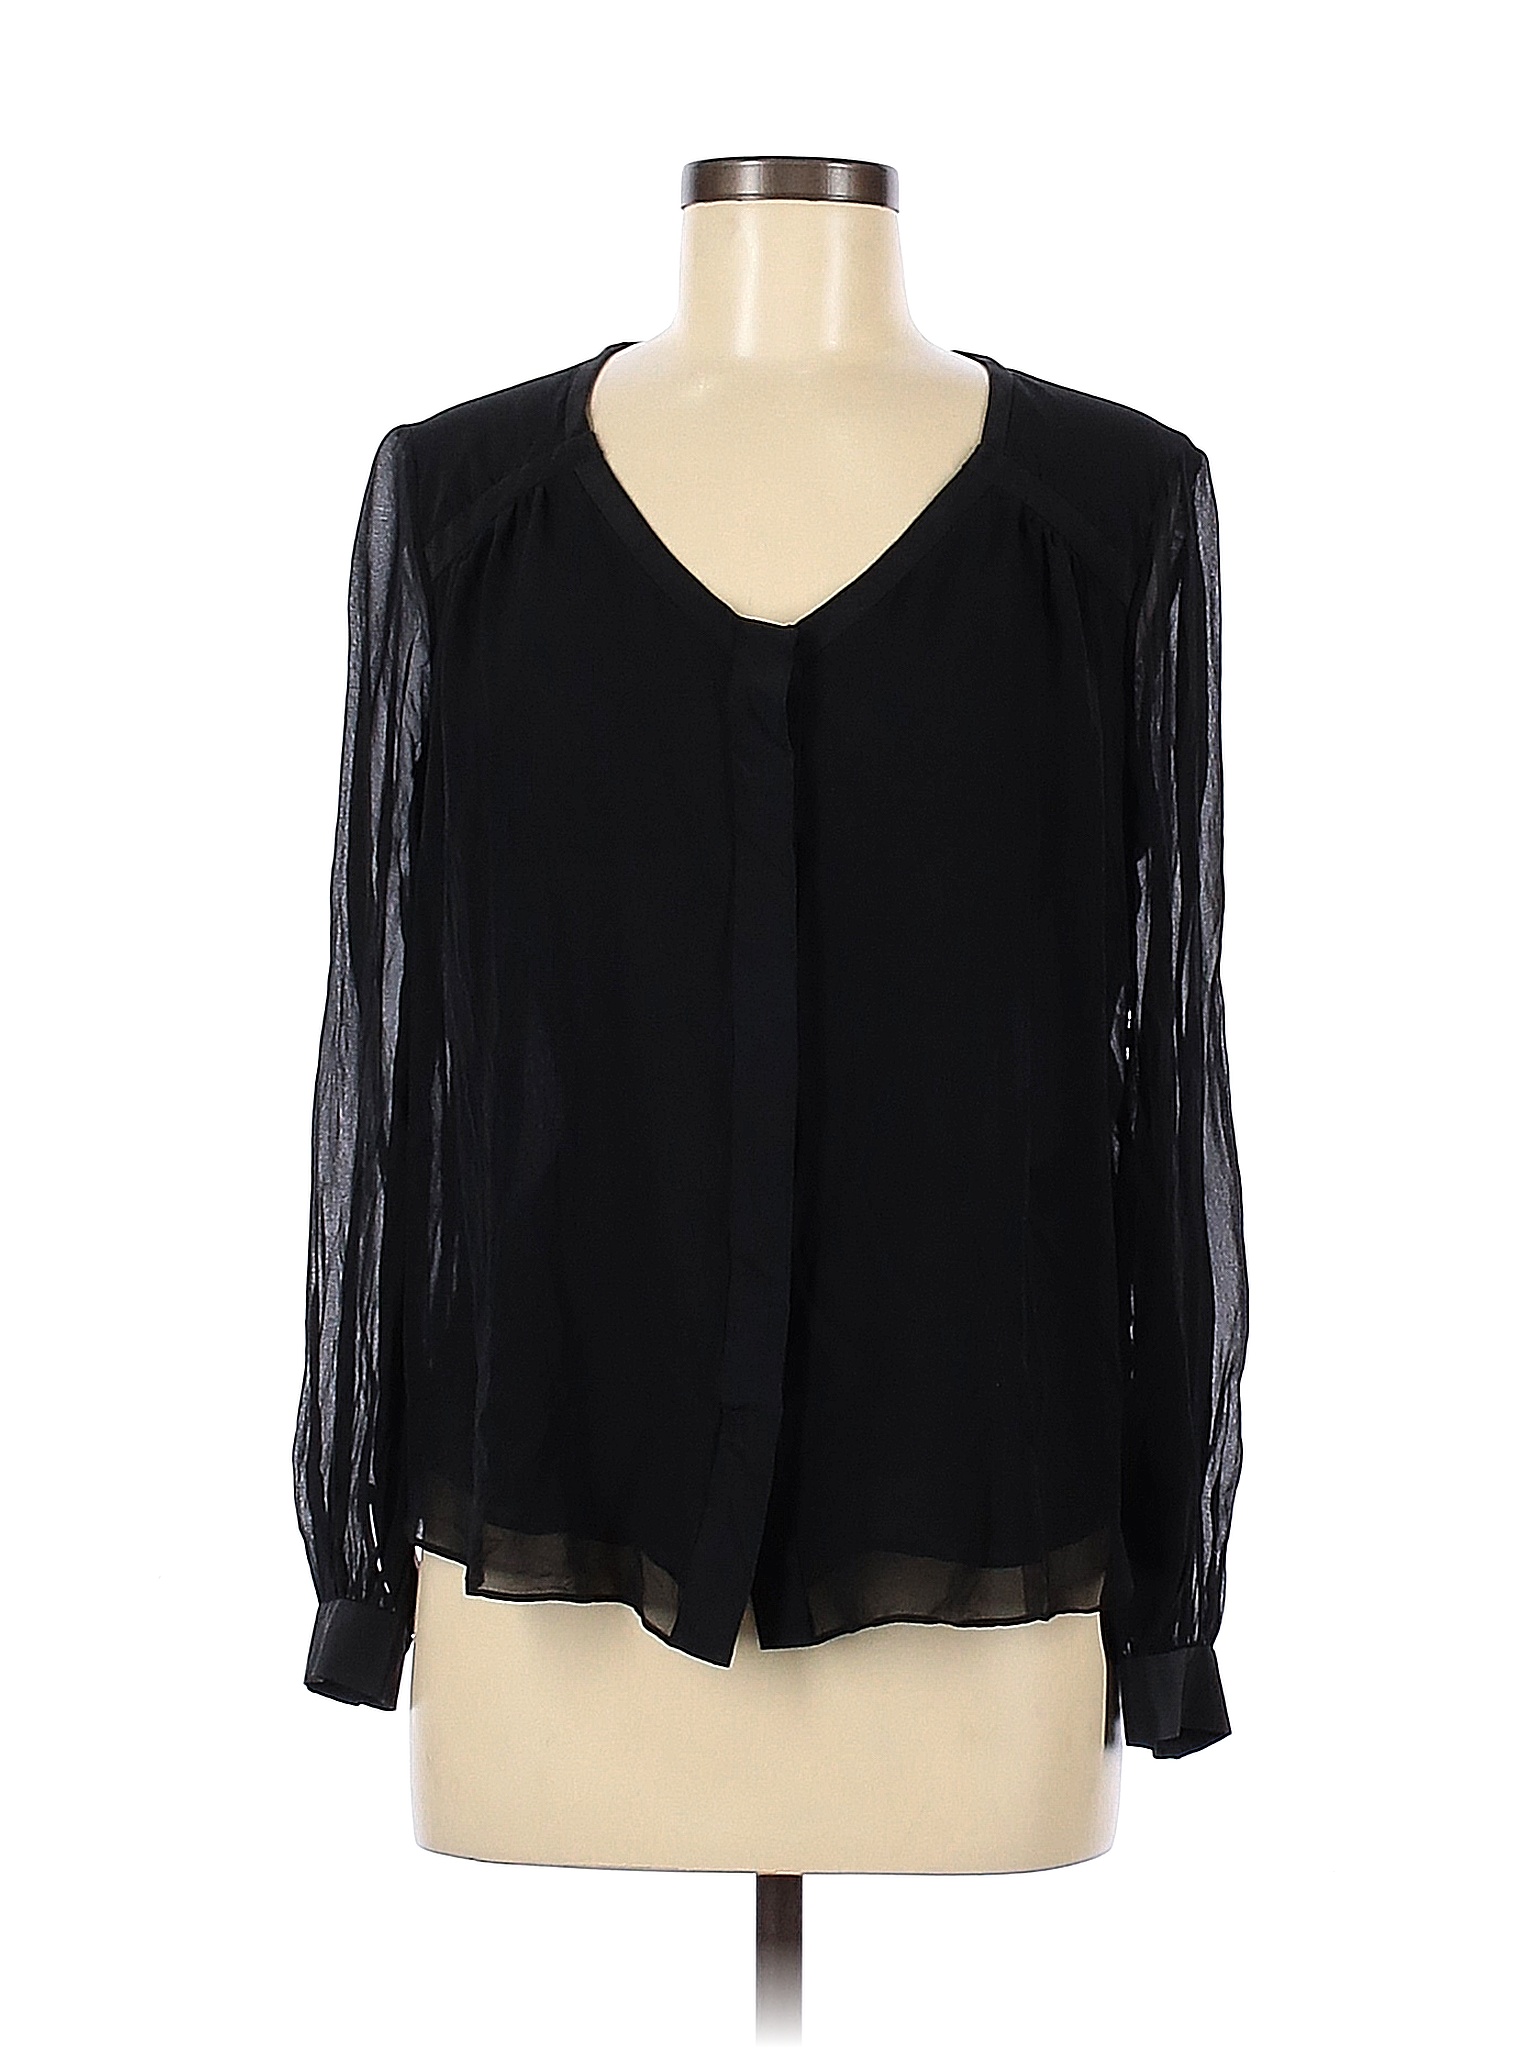 Diane von Furstenberg 100% Silk Solid Black Long Sleeve Silk Top Size 8 ...